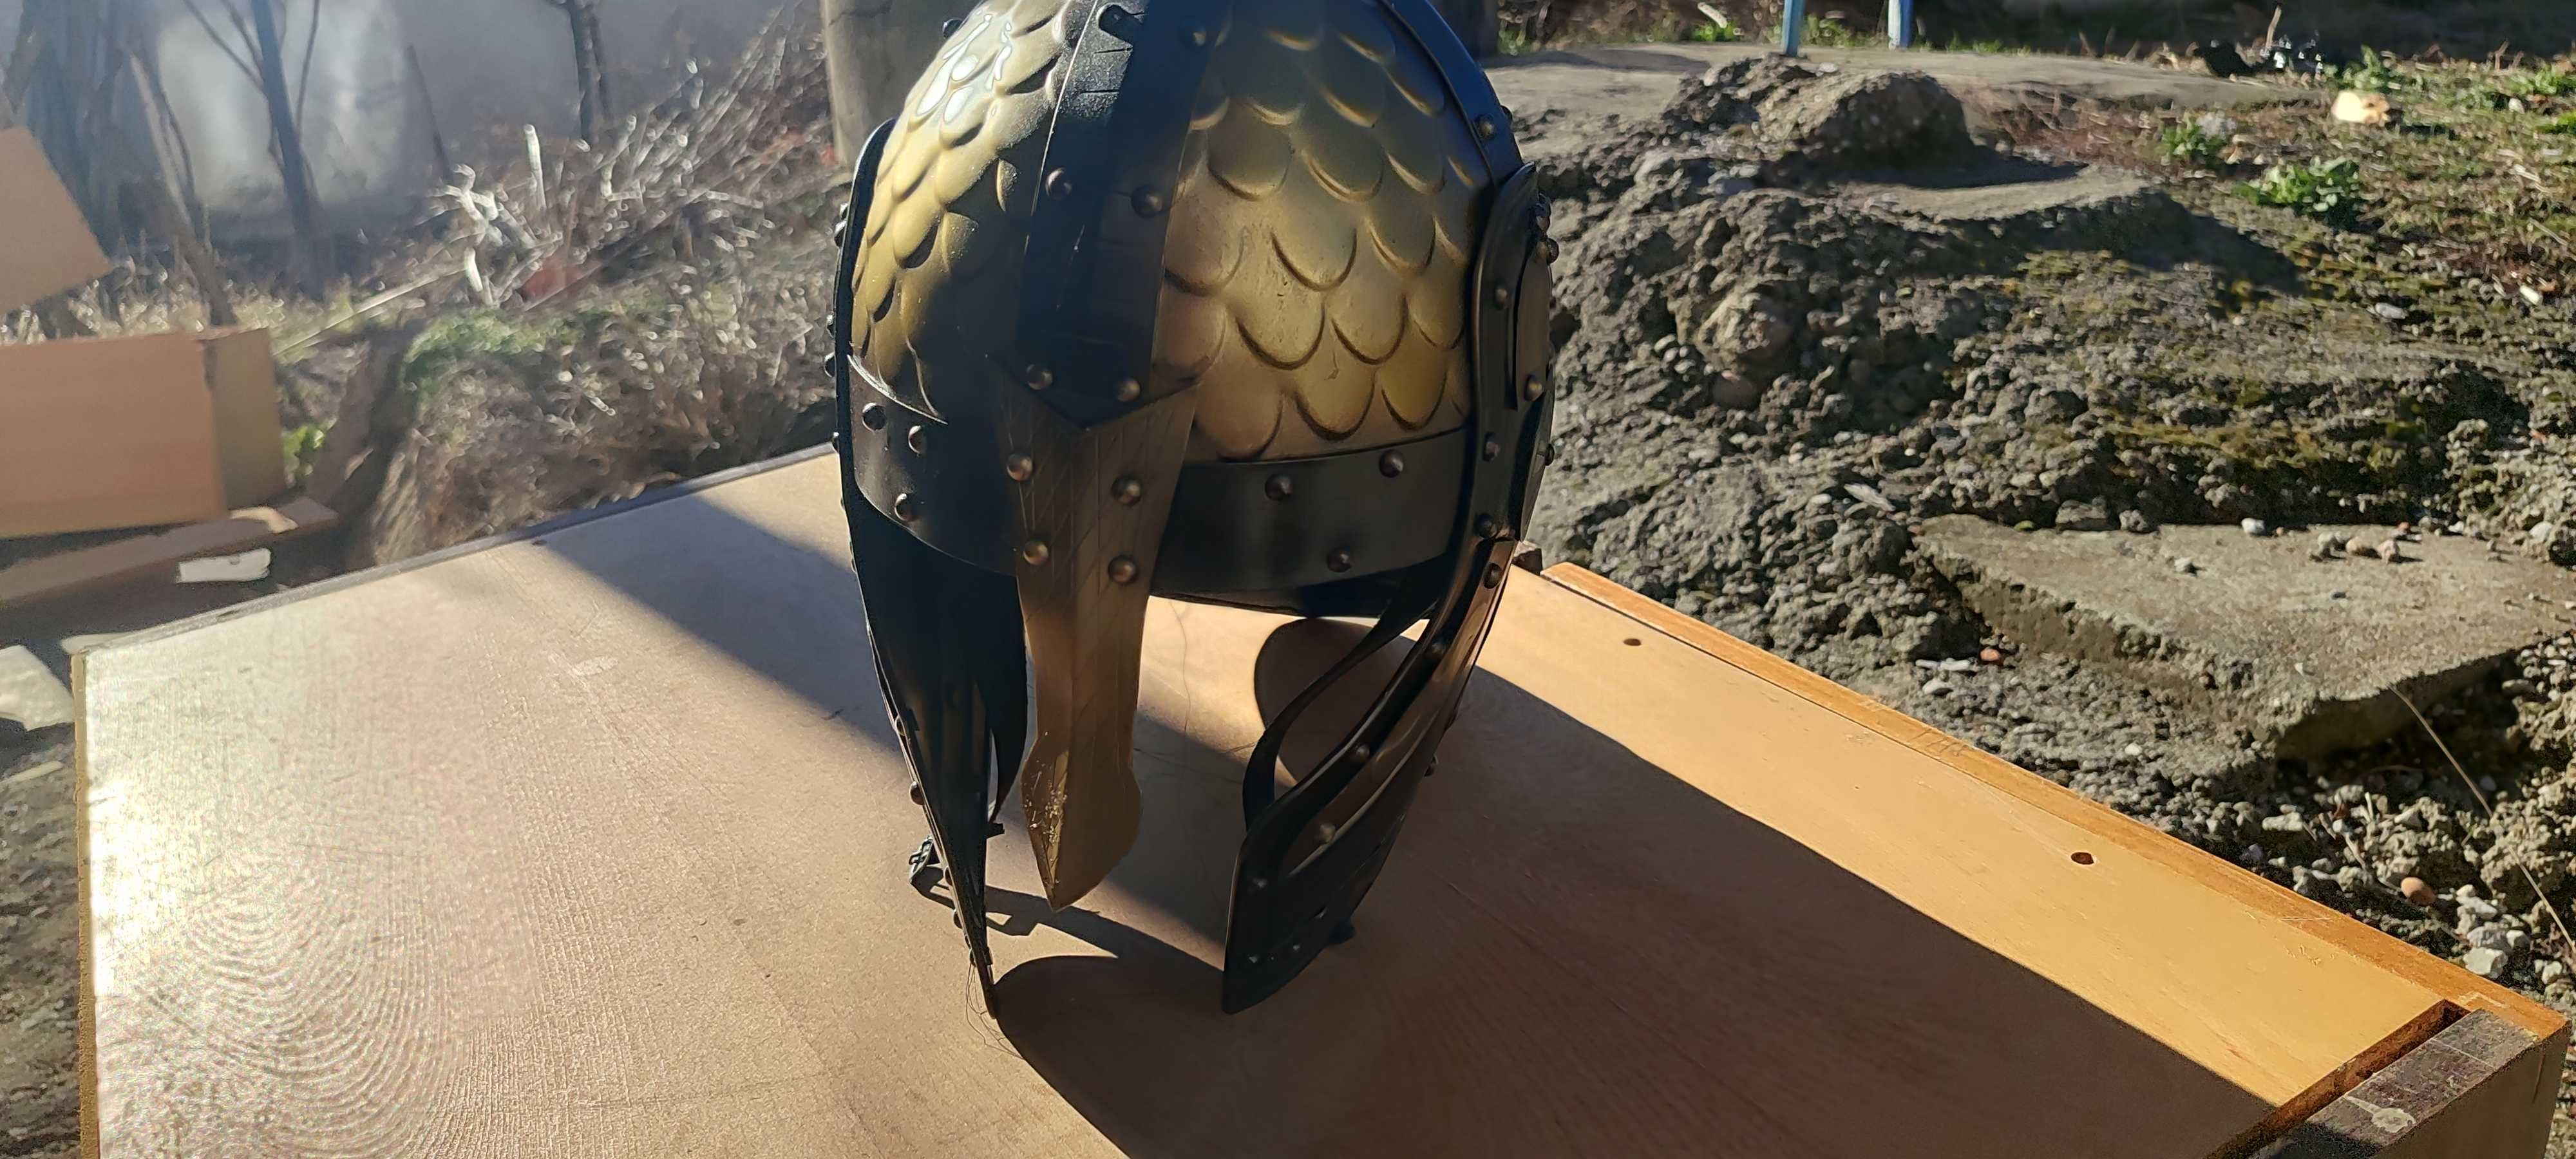 Шлем викингски чисто ъ